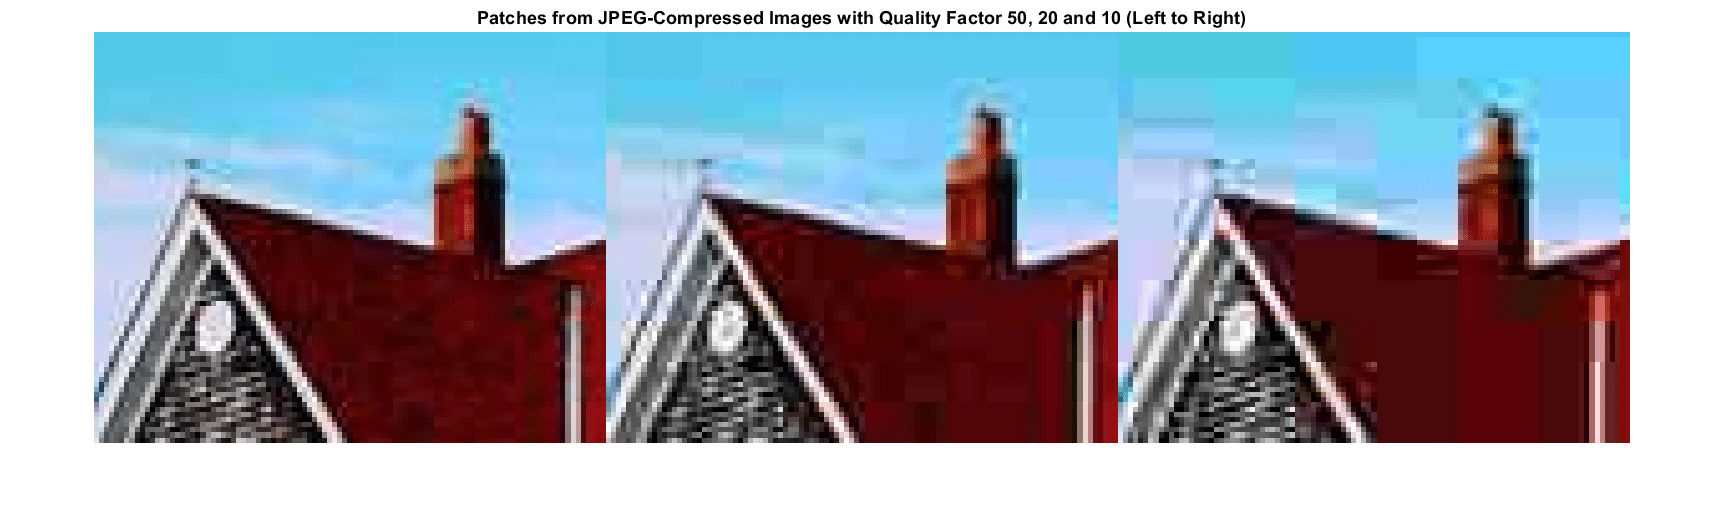 使用深度学习的JPEG图像分块